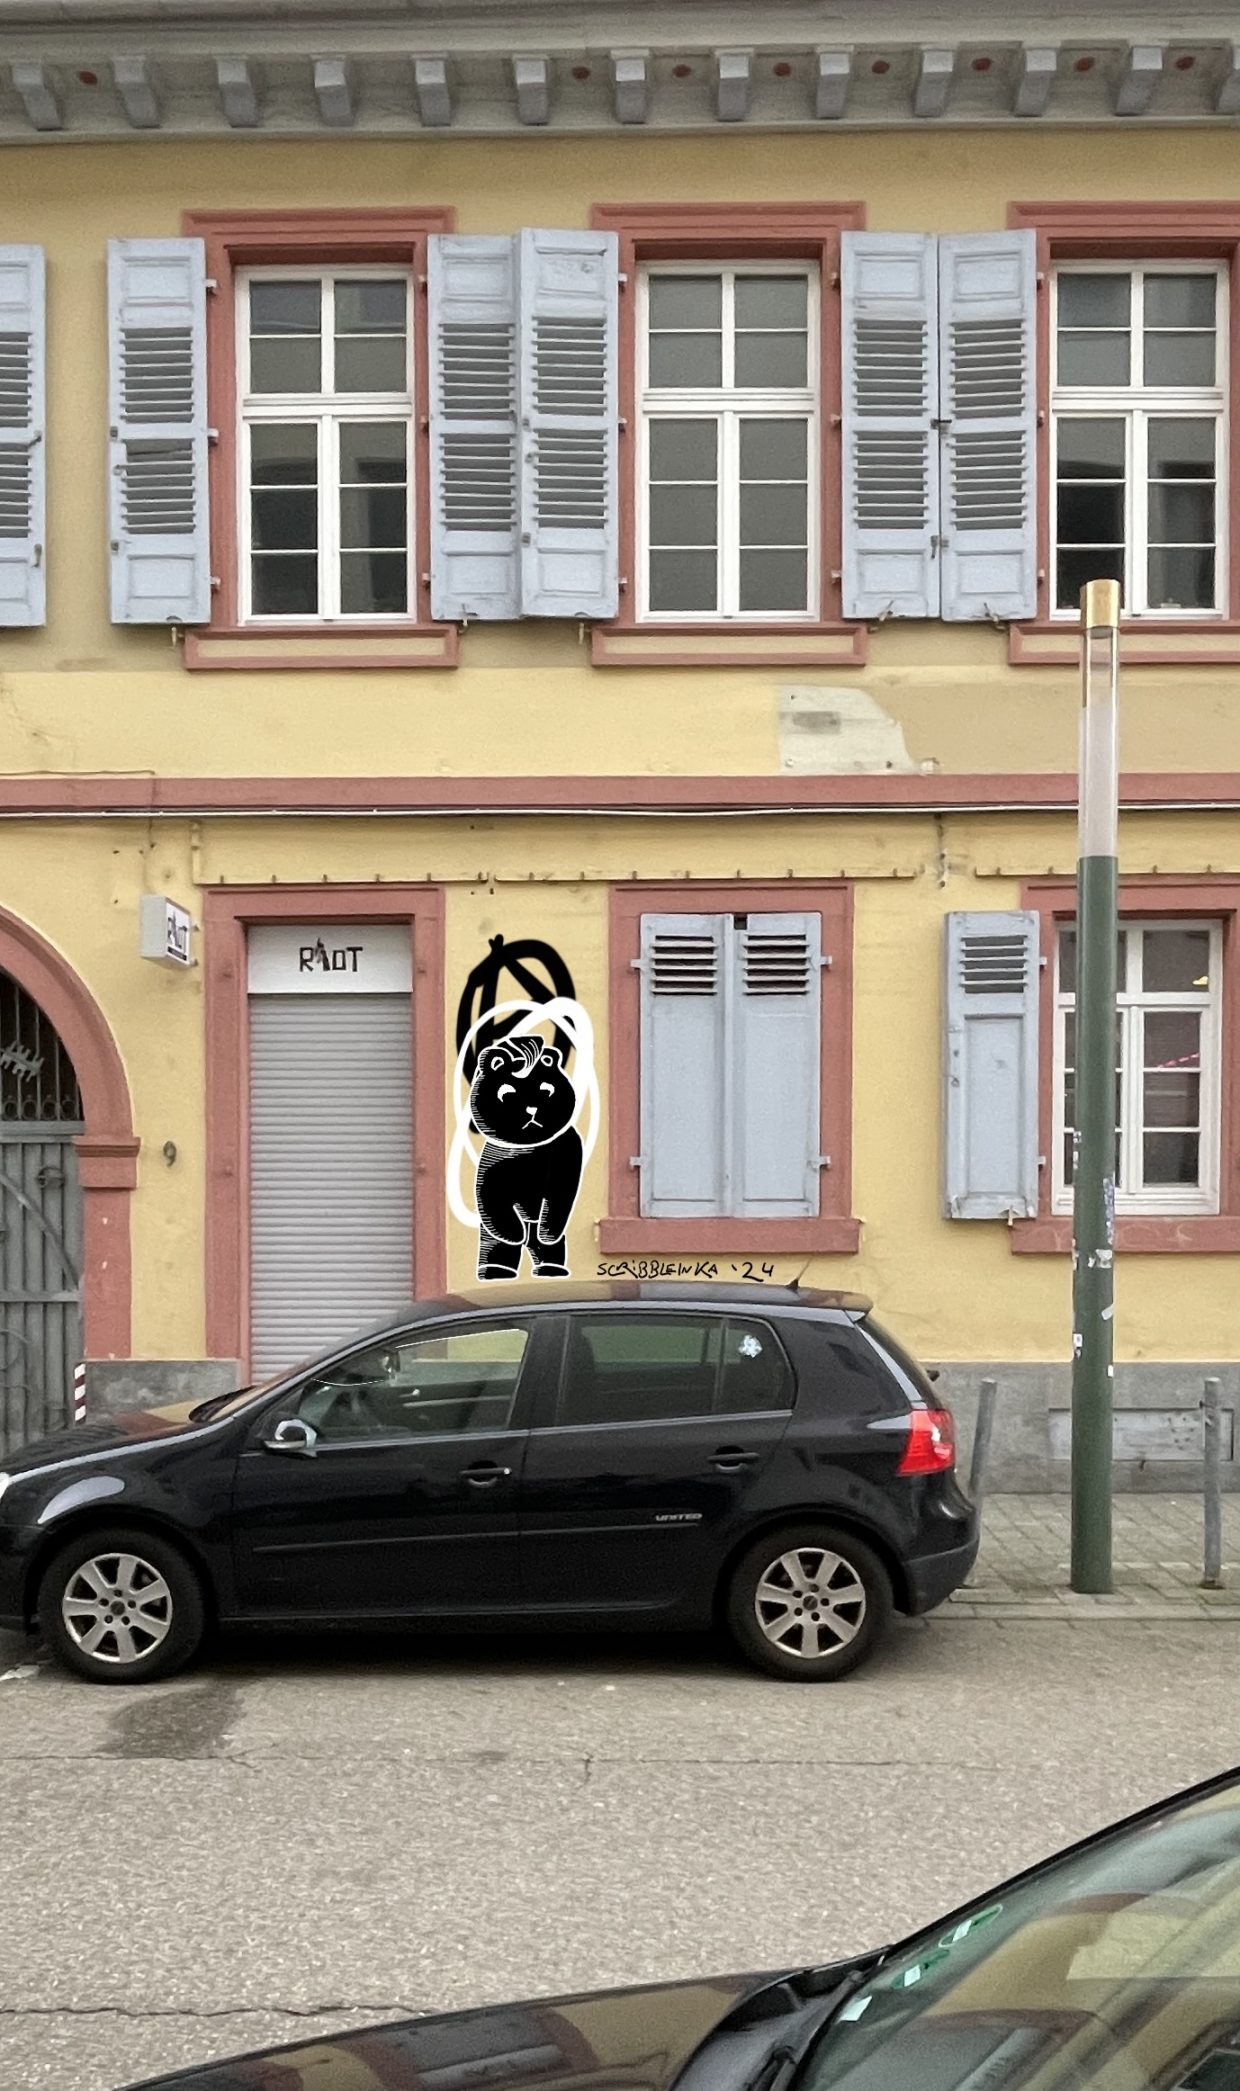 Außenseite des RIot in Karlsruhe, Zu sehen ist ein Graffiti von einem Teddybären